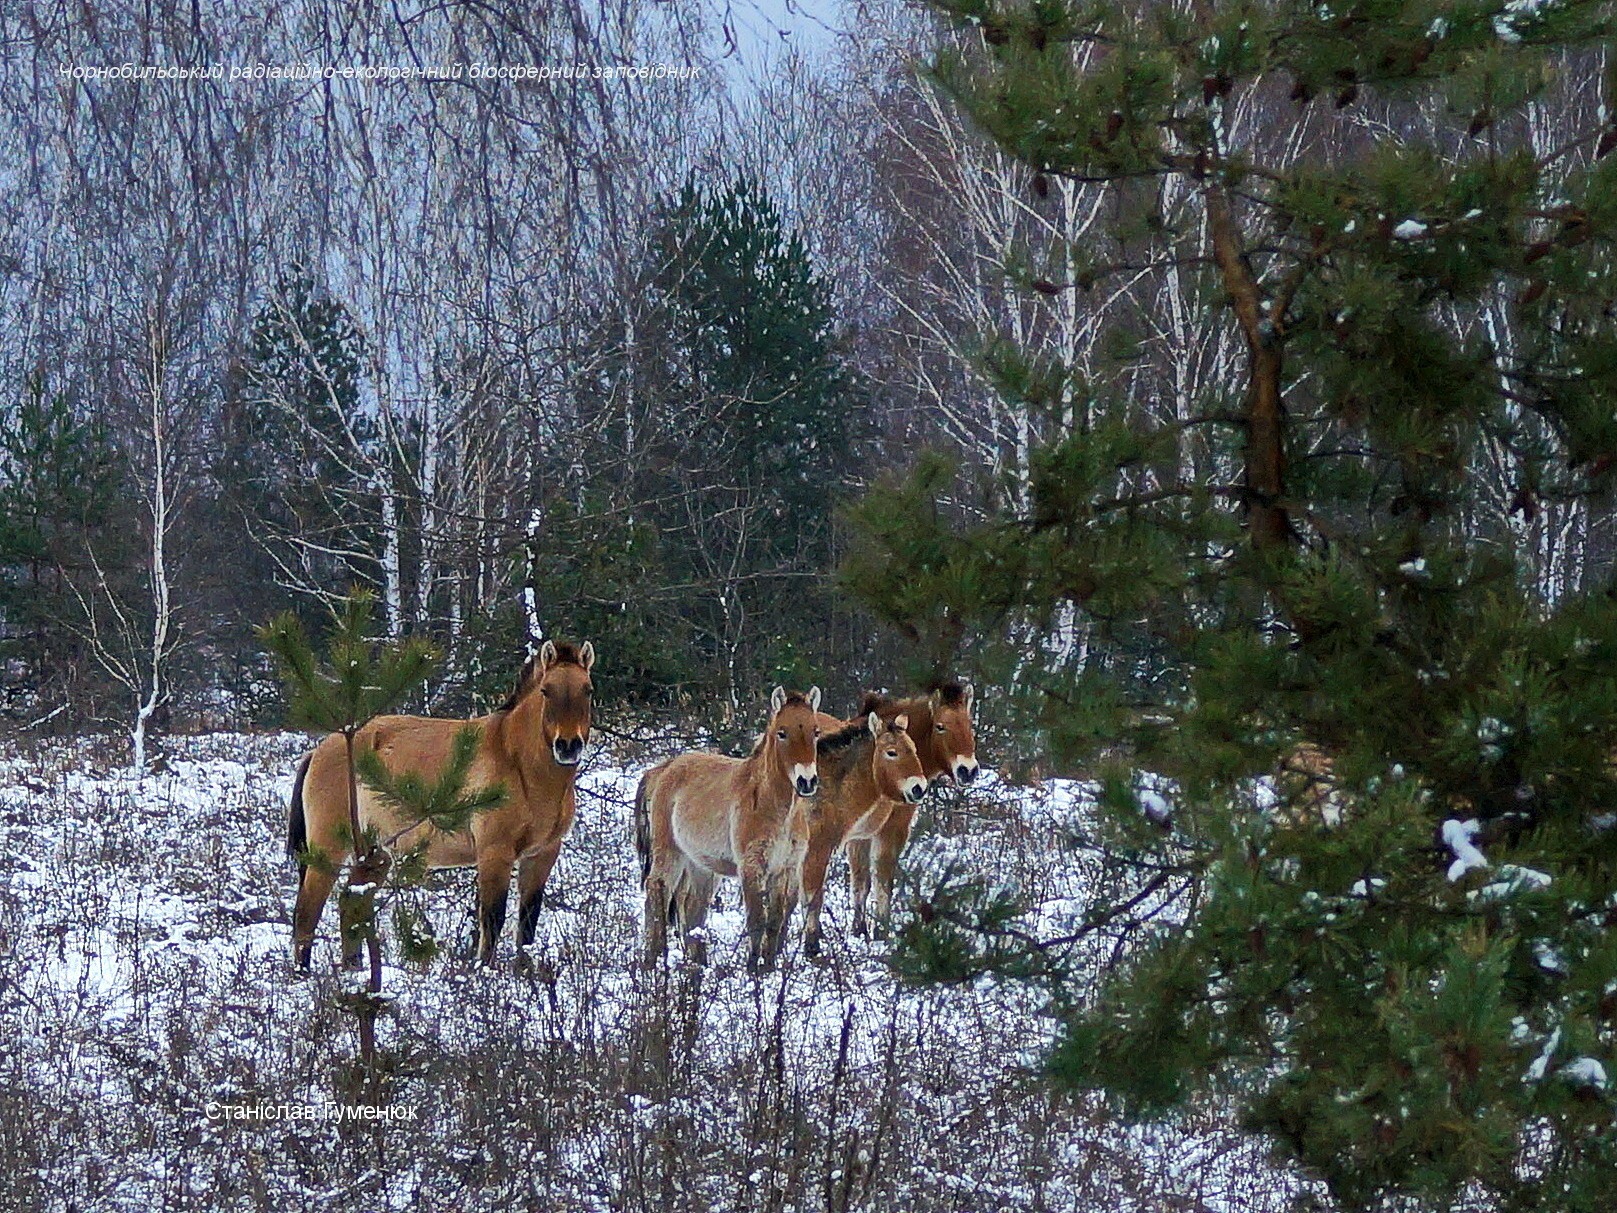 представители Чернобыльского заповедника поделились фотографиями проживающих на территории лошадей